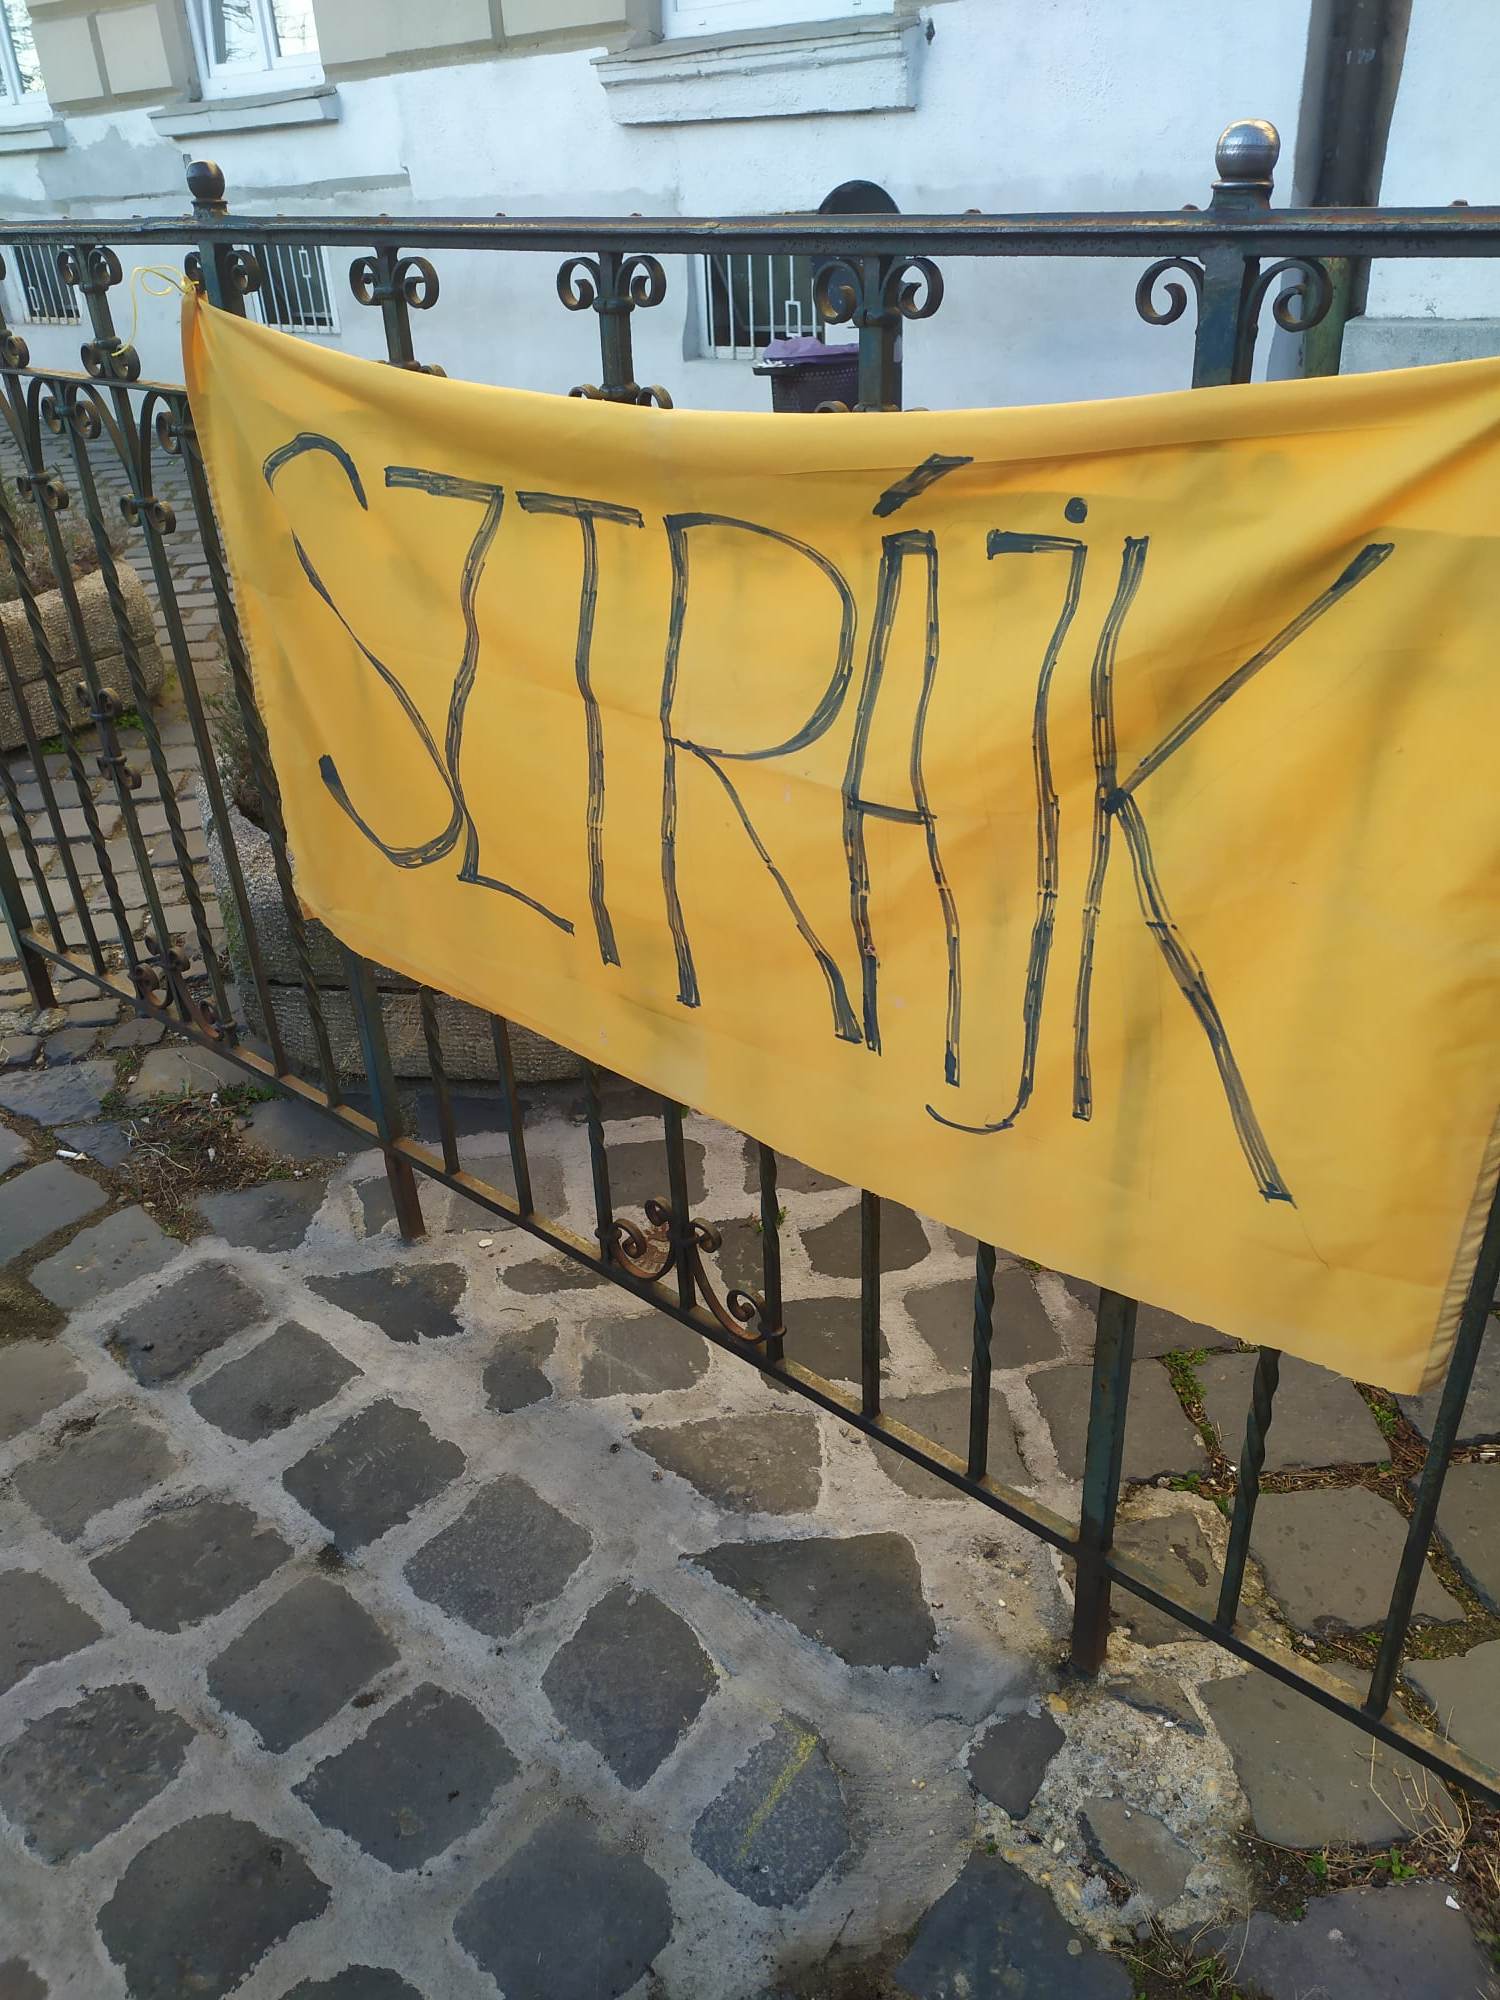 Határozatlan idejű sztrájk az Óbudai Gimnáziumban